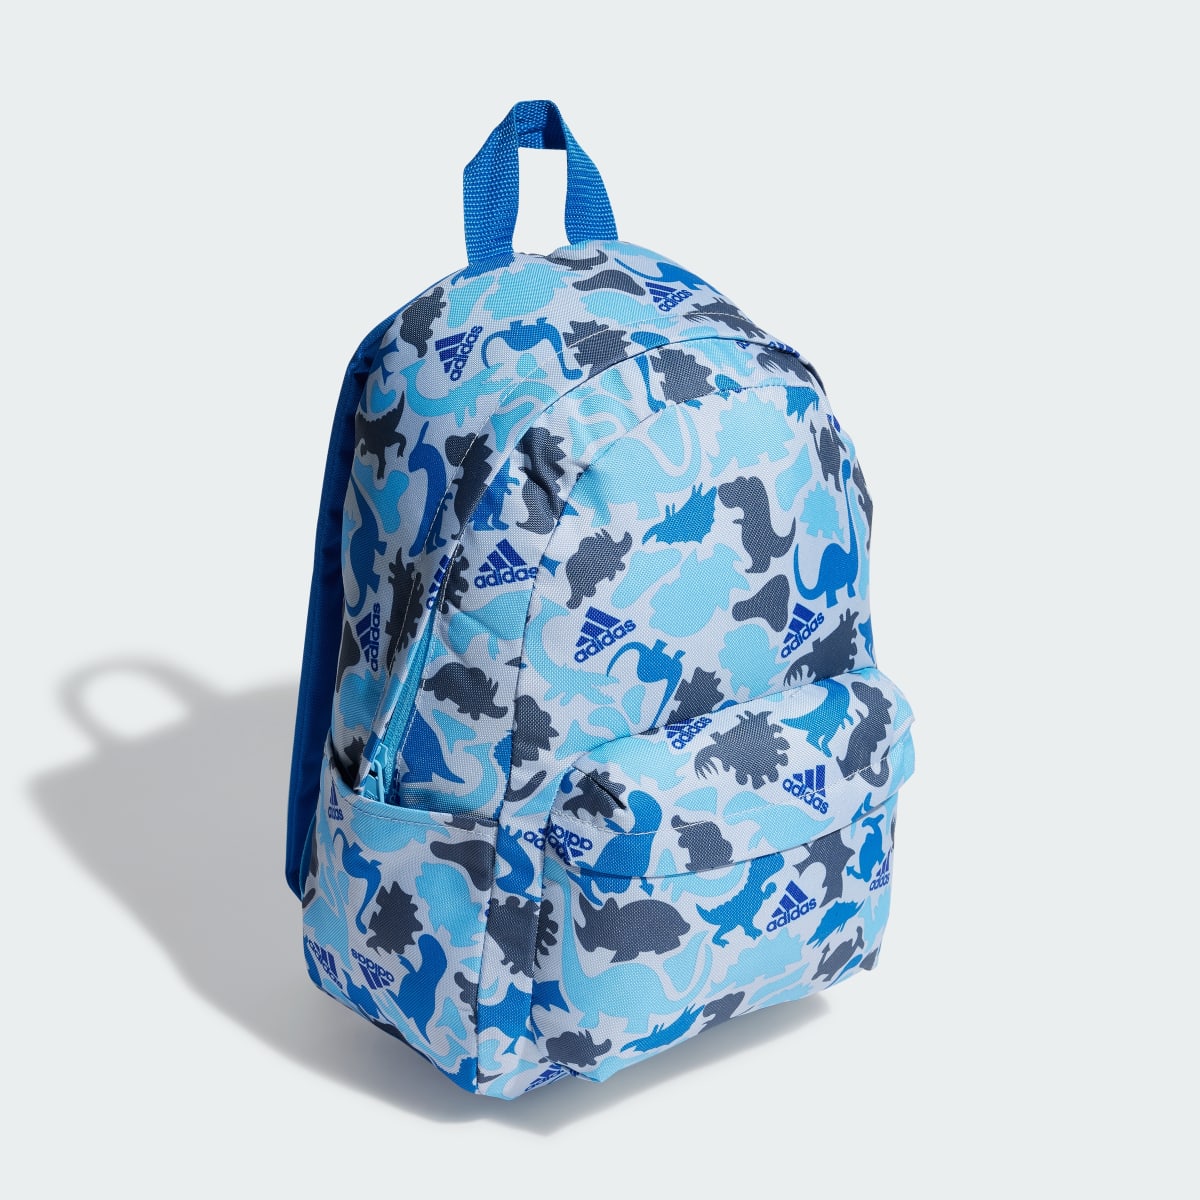 Adidas Printed Backpack Kids. 4